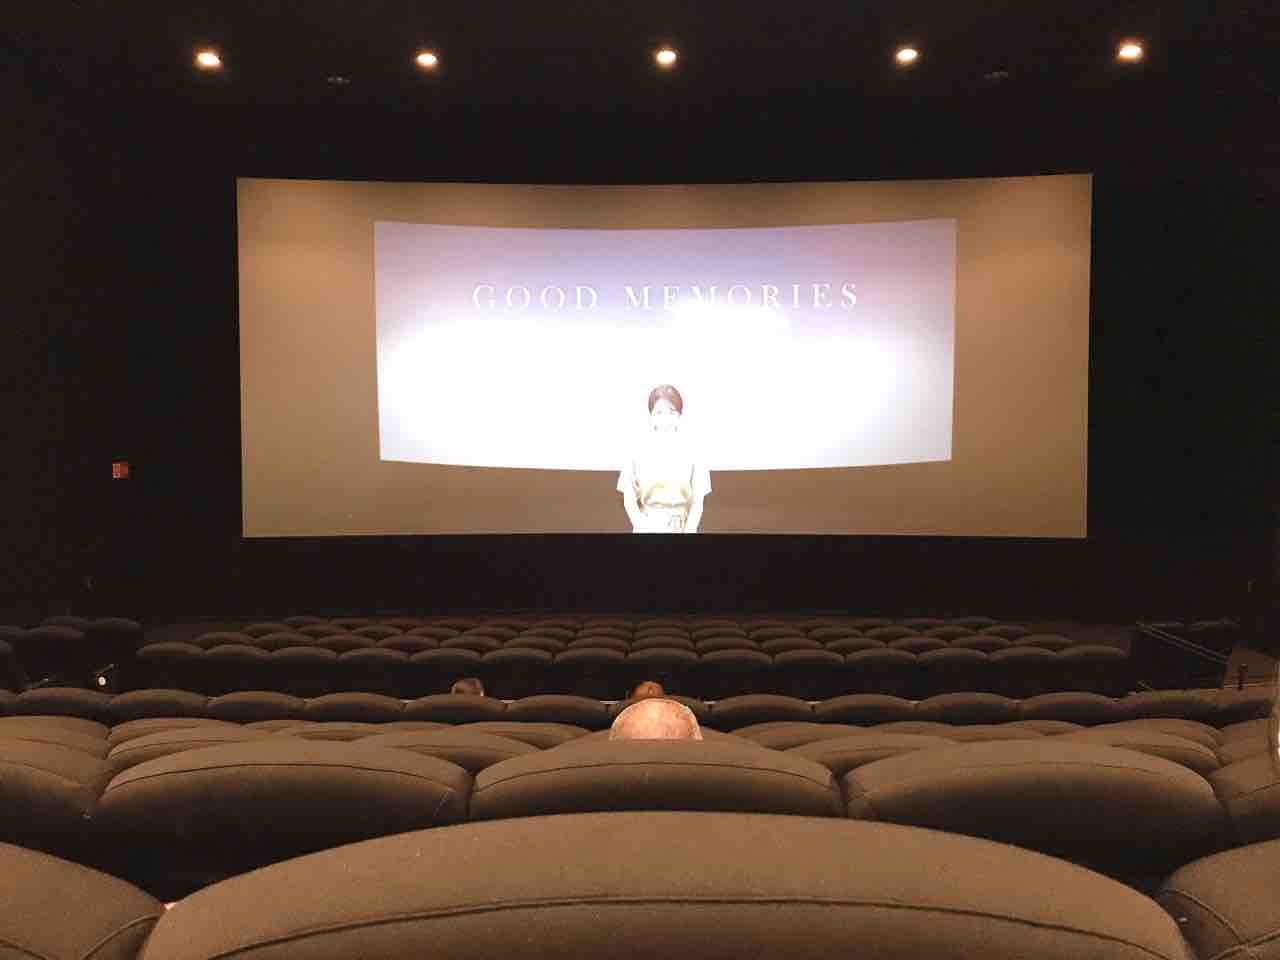 Tohoシネマズららぽーと横浜 スクリーン1 座席表のおすすめの見やすい席 トーキョー映画館番長